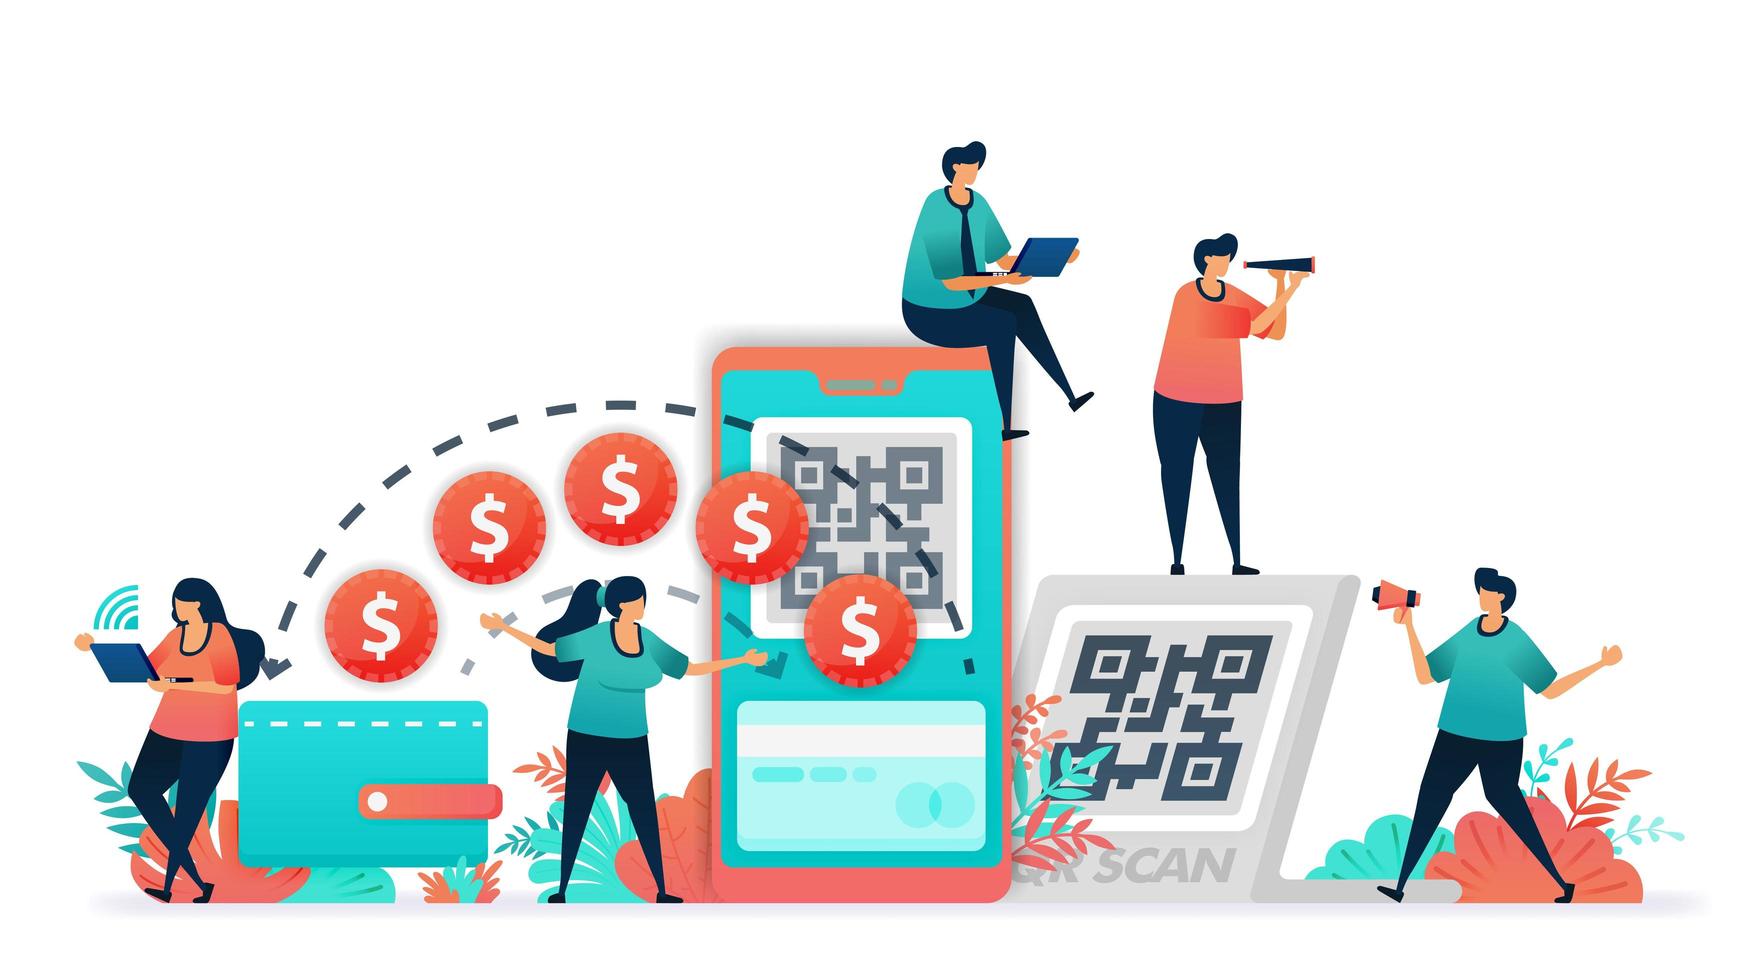 Umstellung von konventionellen Transaktionen mit Banknote oder Geld auf digitale Geldbörse. QR-Code für Mobile Banking und bargeldloses Zahlungssystem, Fintech oder Finanztechnologie, bargeldlose Gesellschaft scannen. vektor